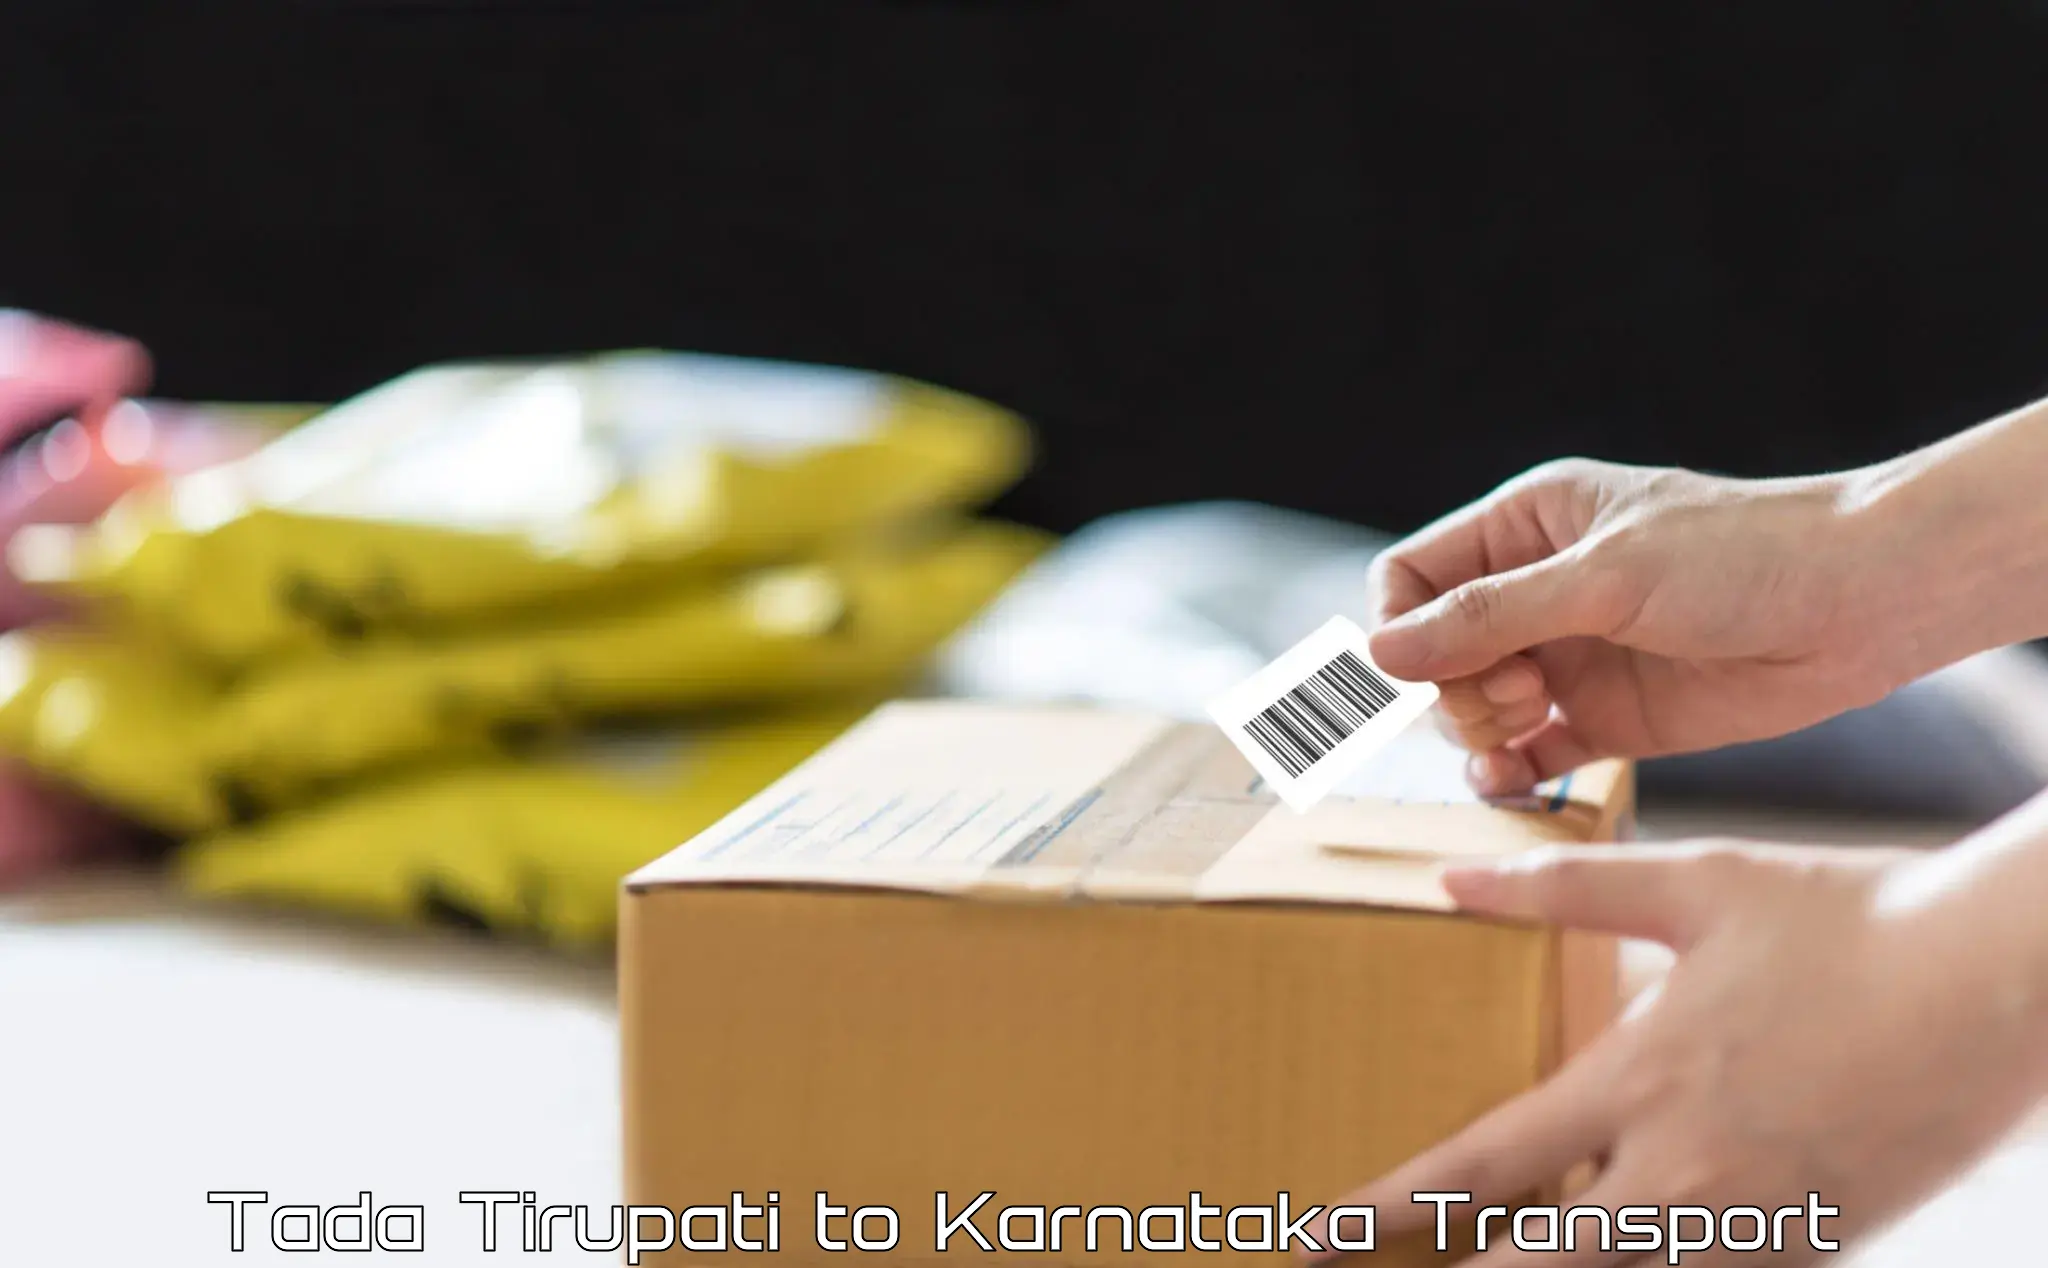 Shipping partner Tada Tirupati to Ukkadagatri